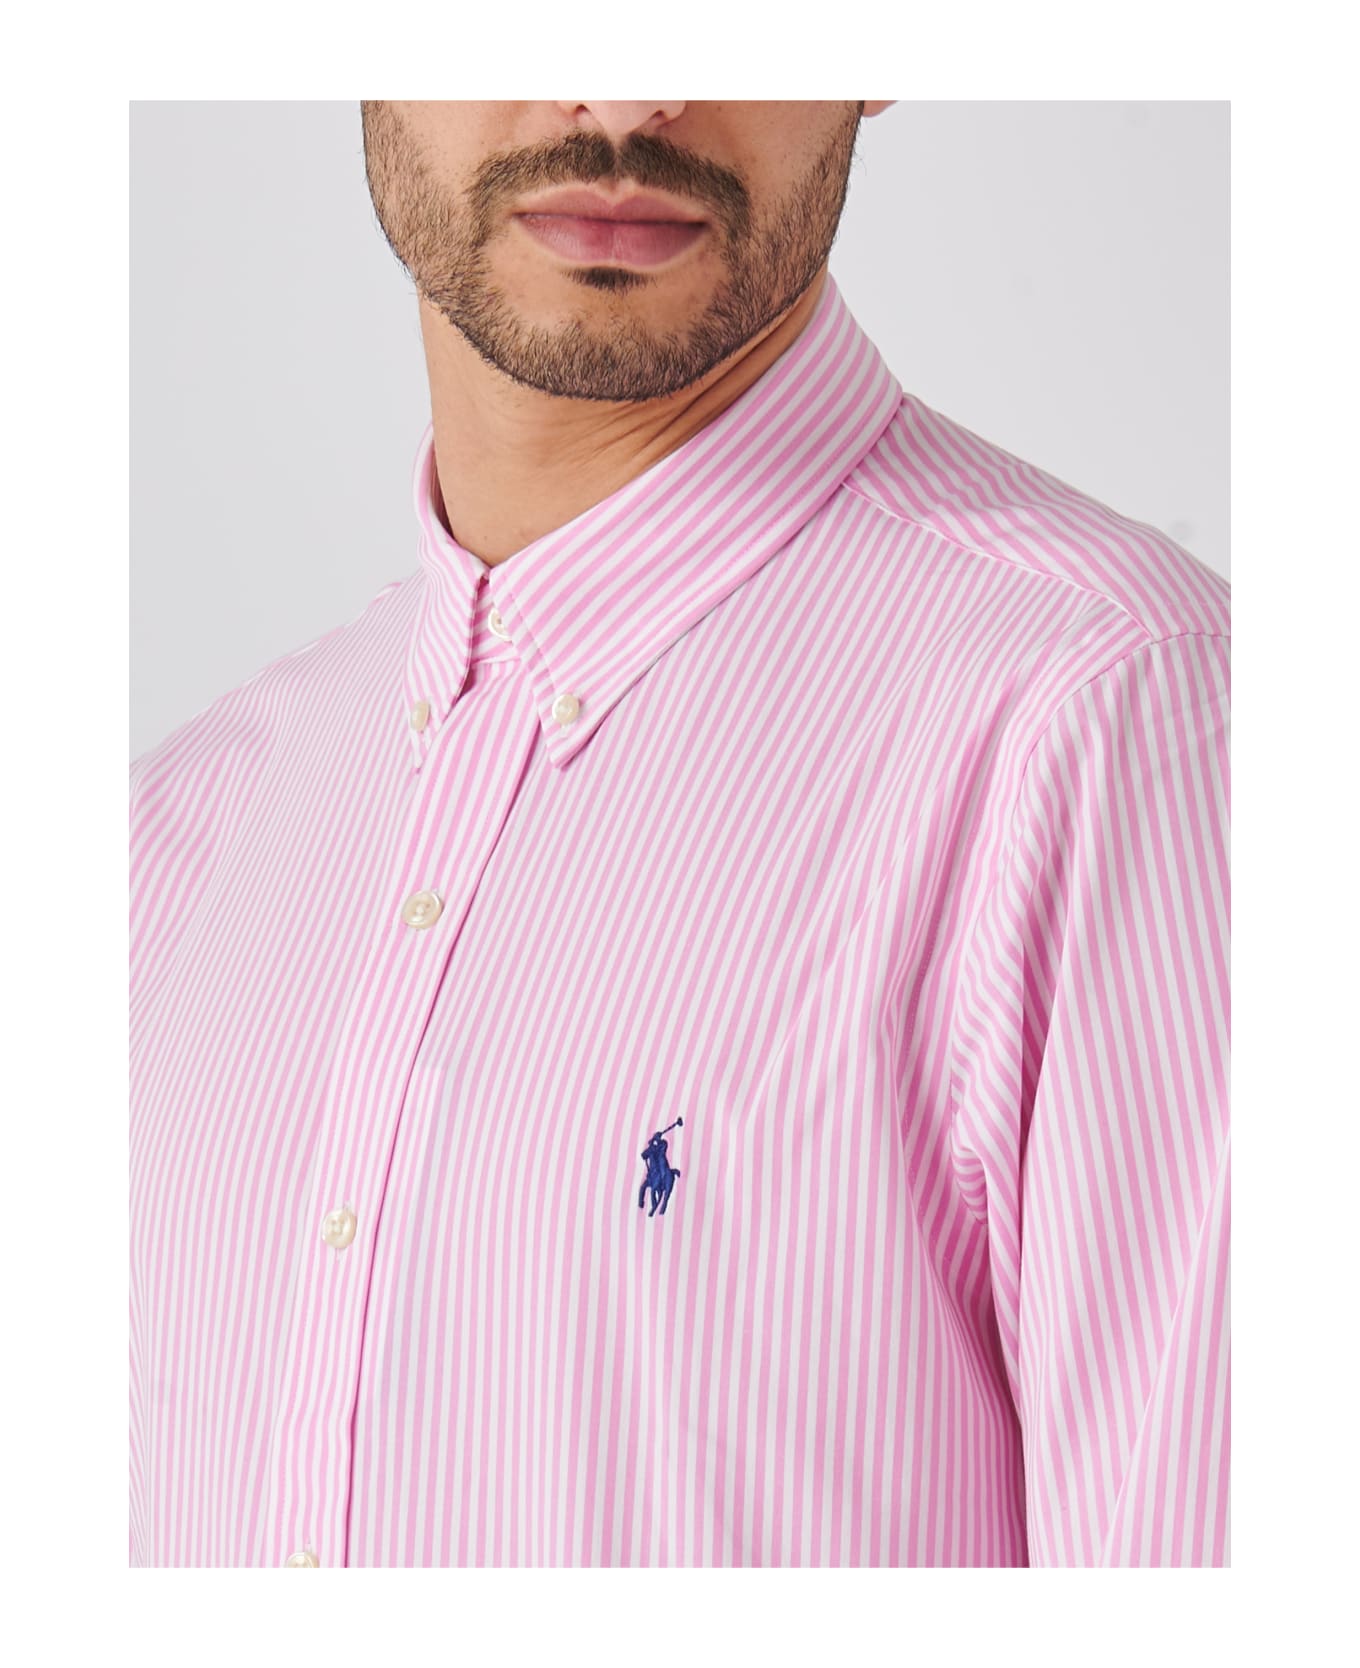 Polo Ralph Lauren Long Sleeve Sport Shirt Shirt - Pink シャツ